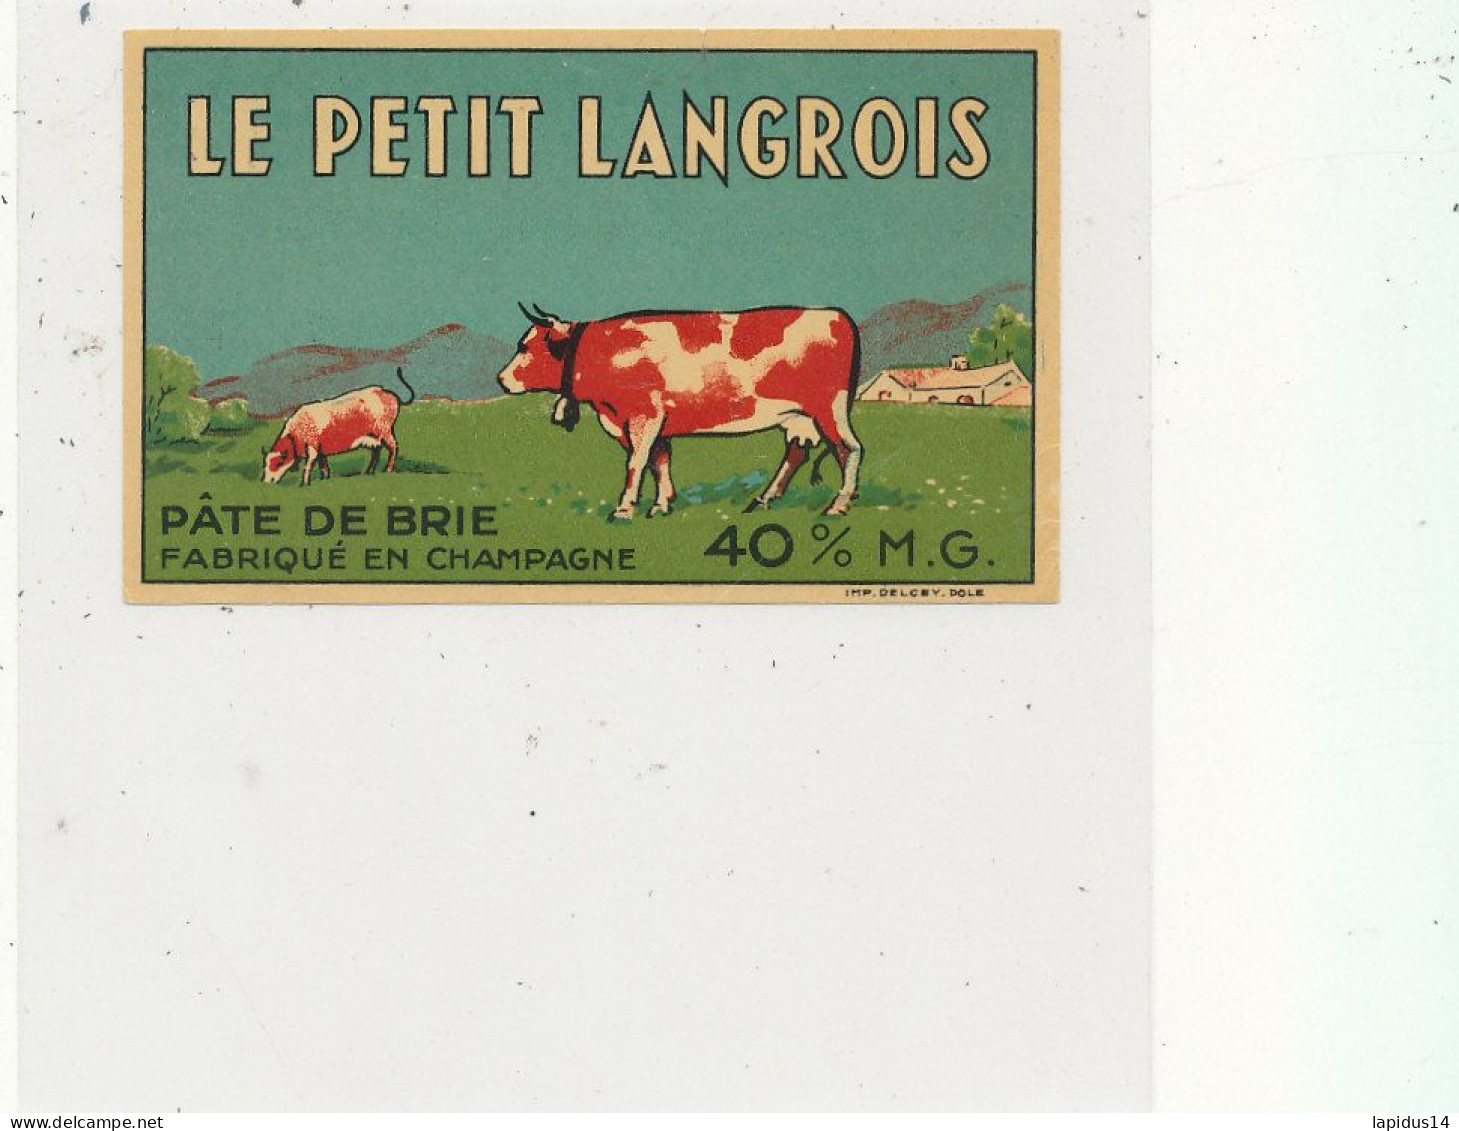 GG 435 / ETIQUETTE FROMAGE   PATE DE BRIE   LE PETIT LANGROIS  FABRIQUE EN CHAMPAGNE - Cheese